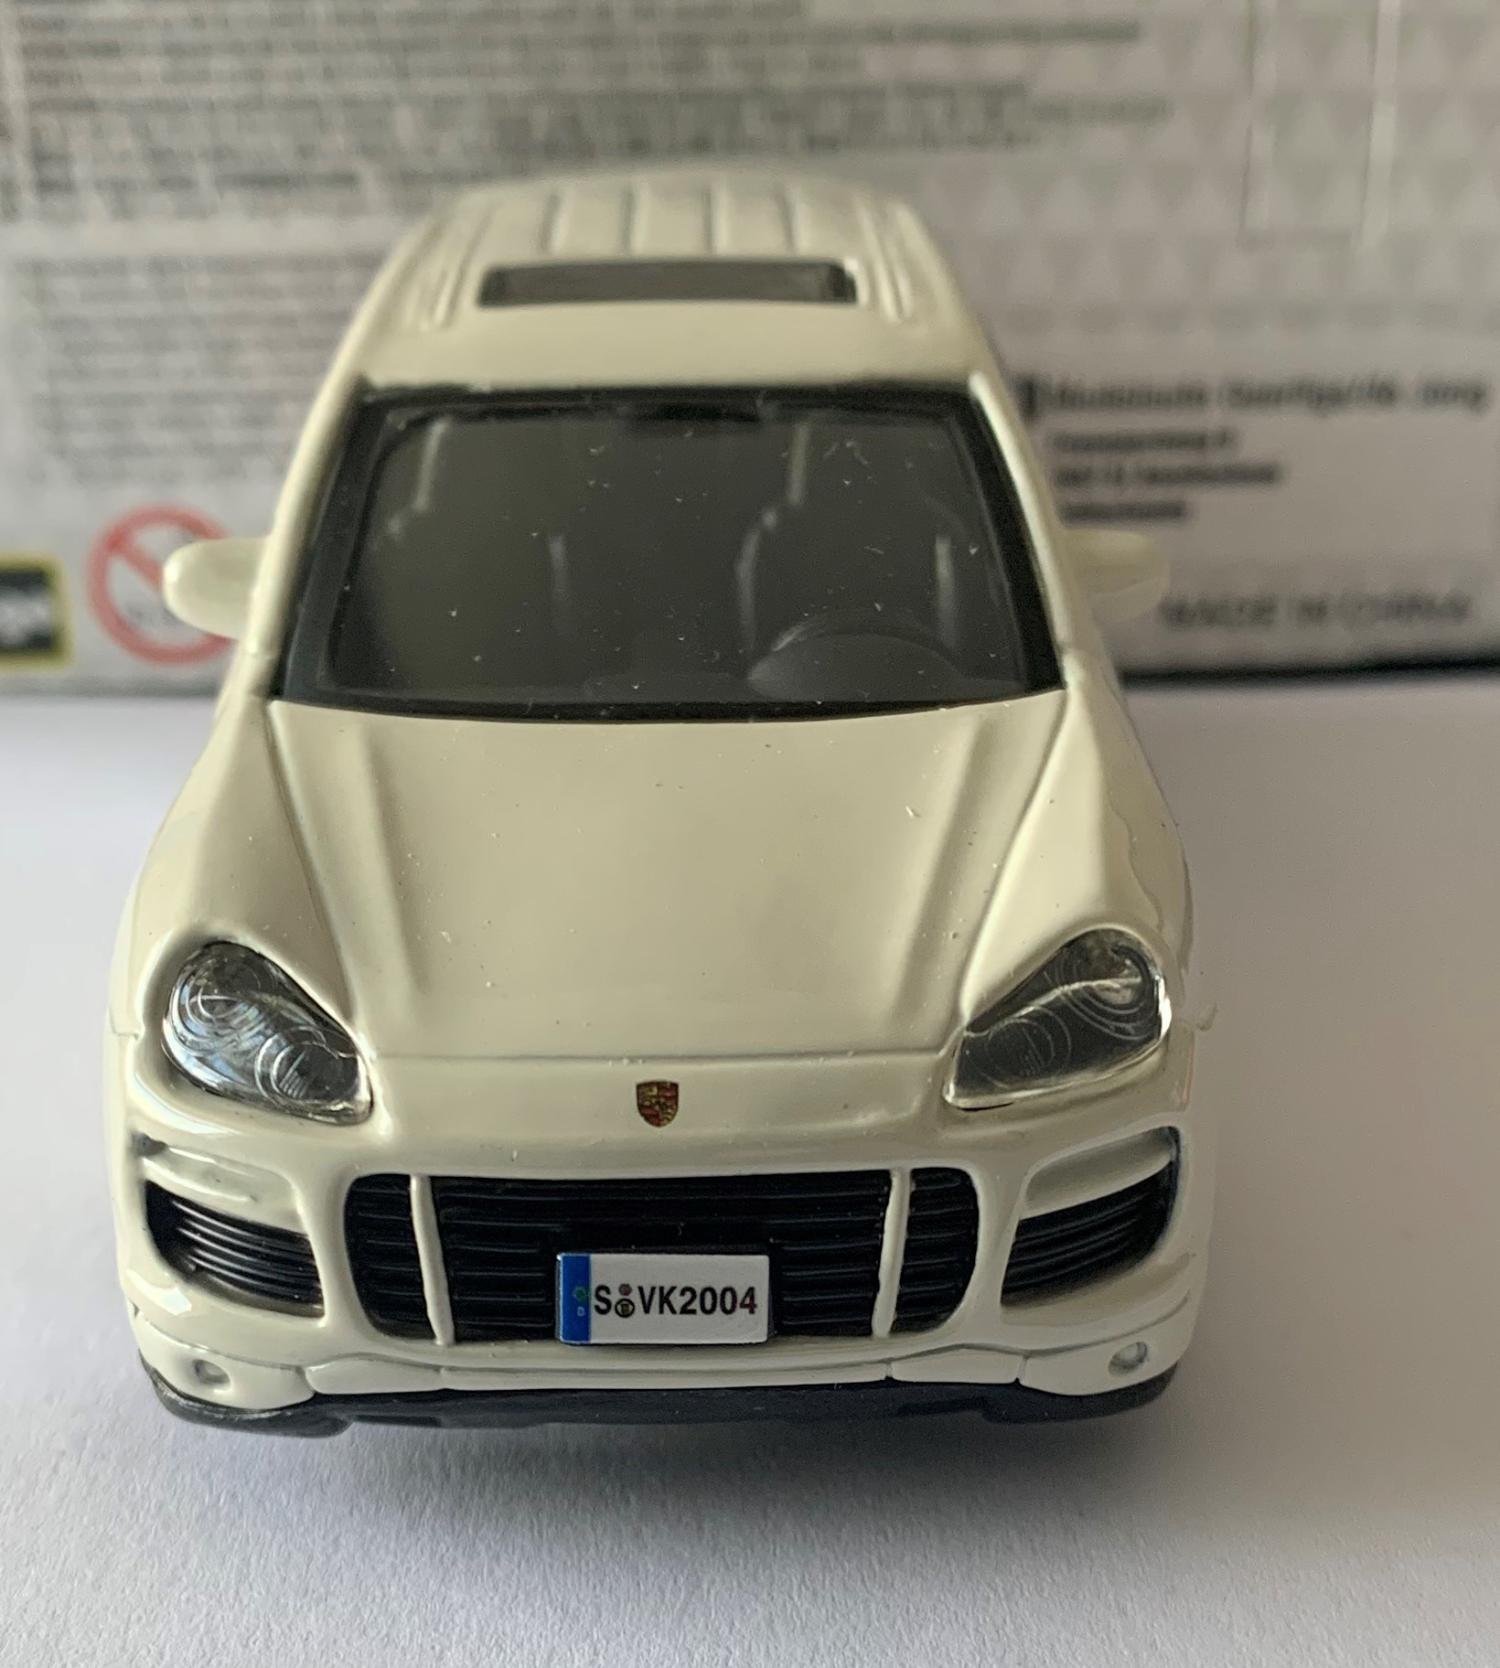 Porsche Cayenne in white 1:43 scale model from Bburago, streetfire